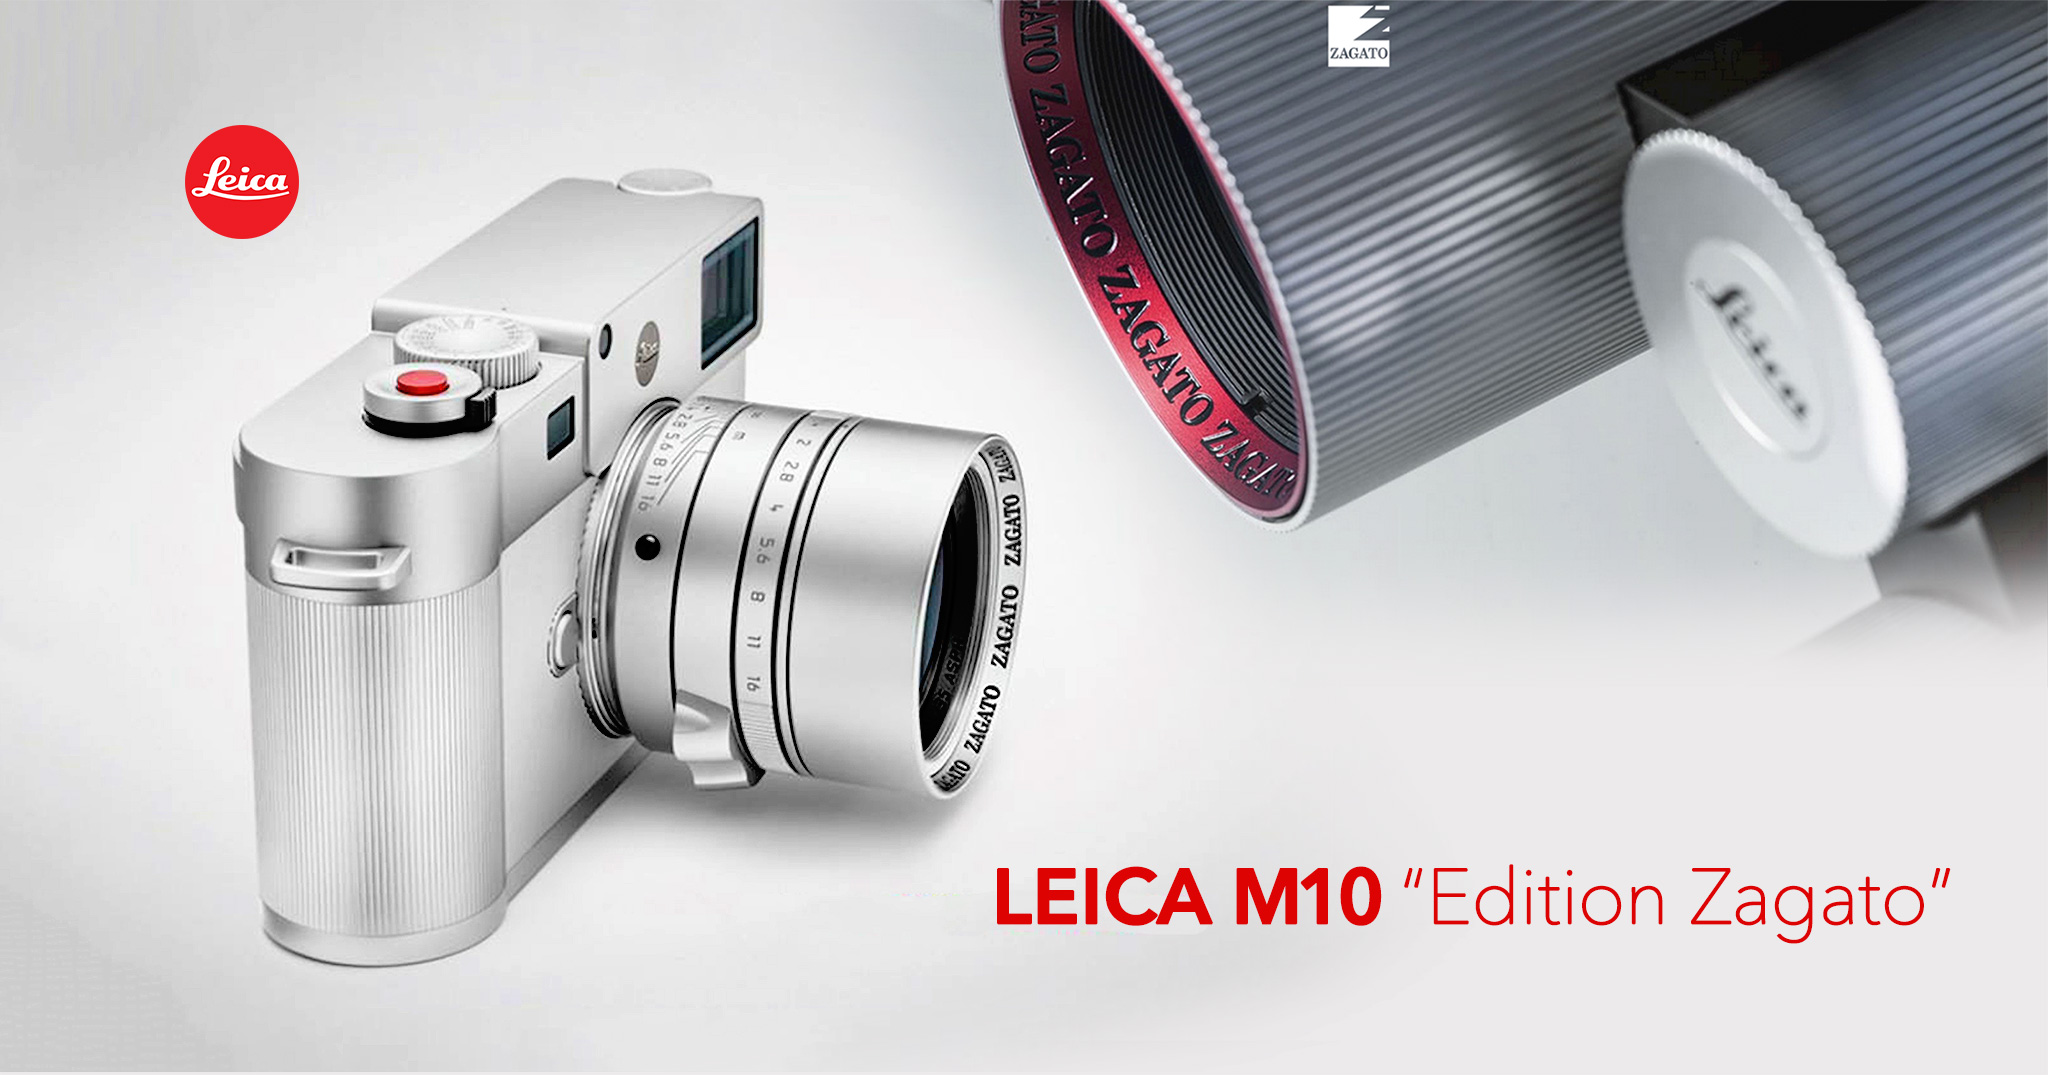 Đây là Leica M10 phiên bản đặc biệt "Zagato" sắp ra mắt